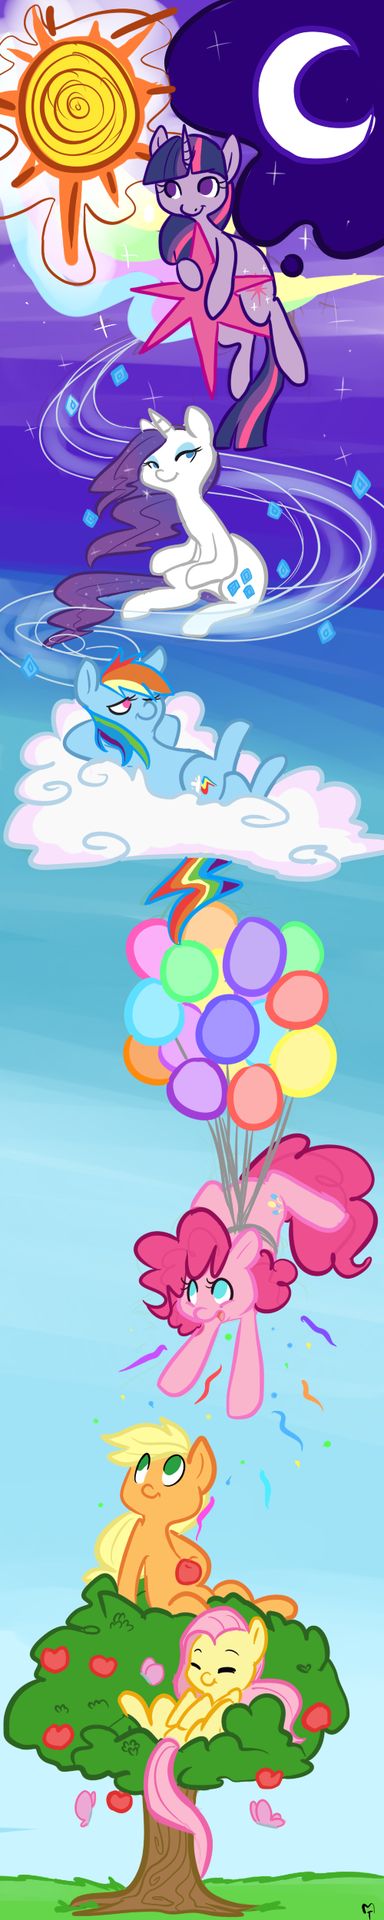 88663 apple applejack apple tree artistmt balloon butterfly cloud con